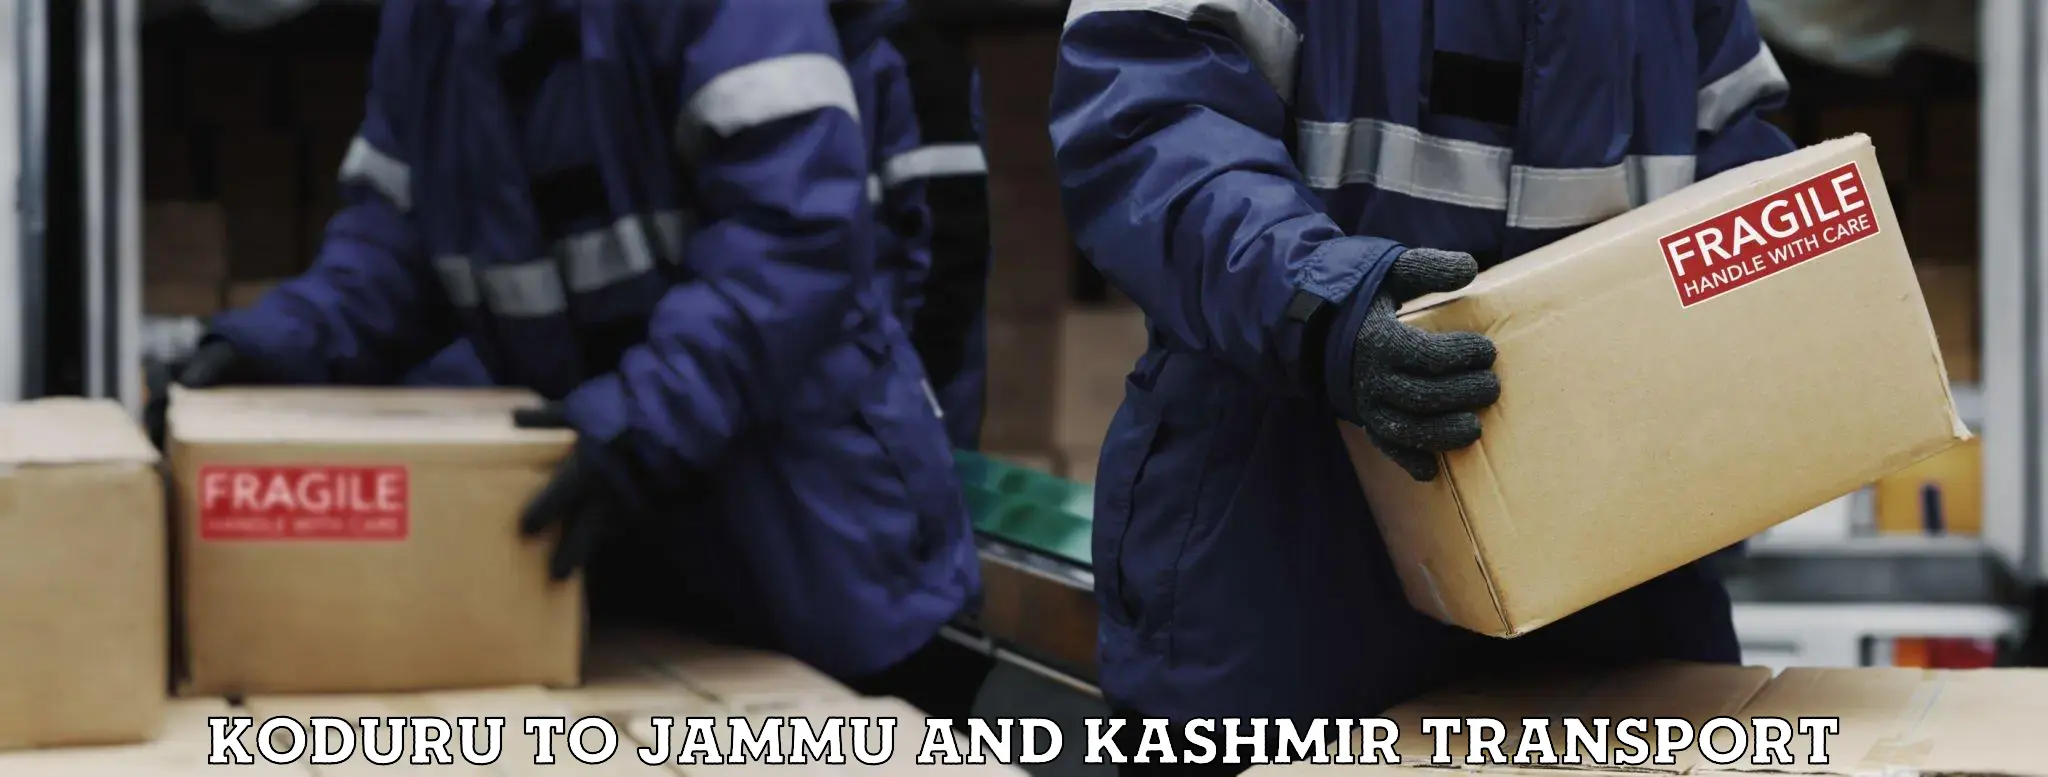 Material transport services Koduru to Jammu and Kashmir